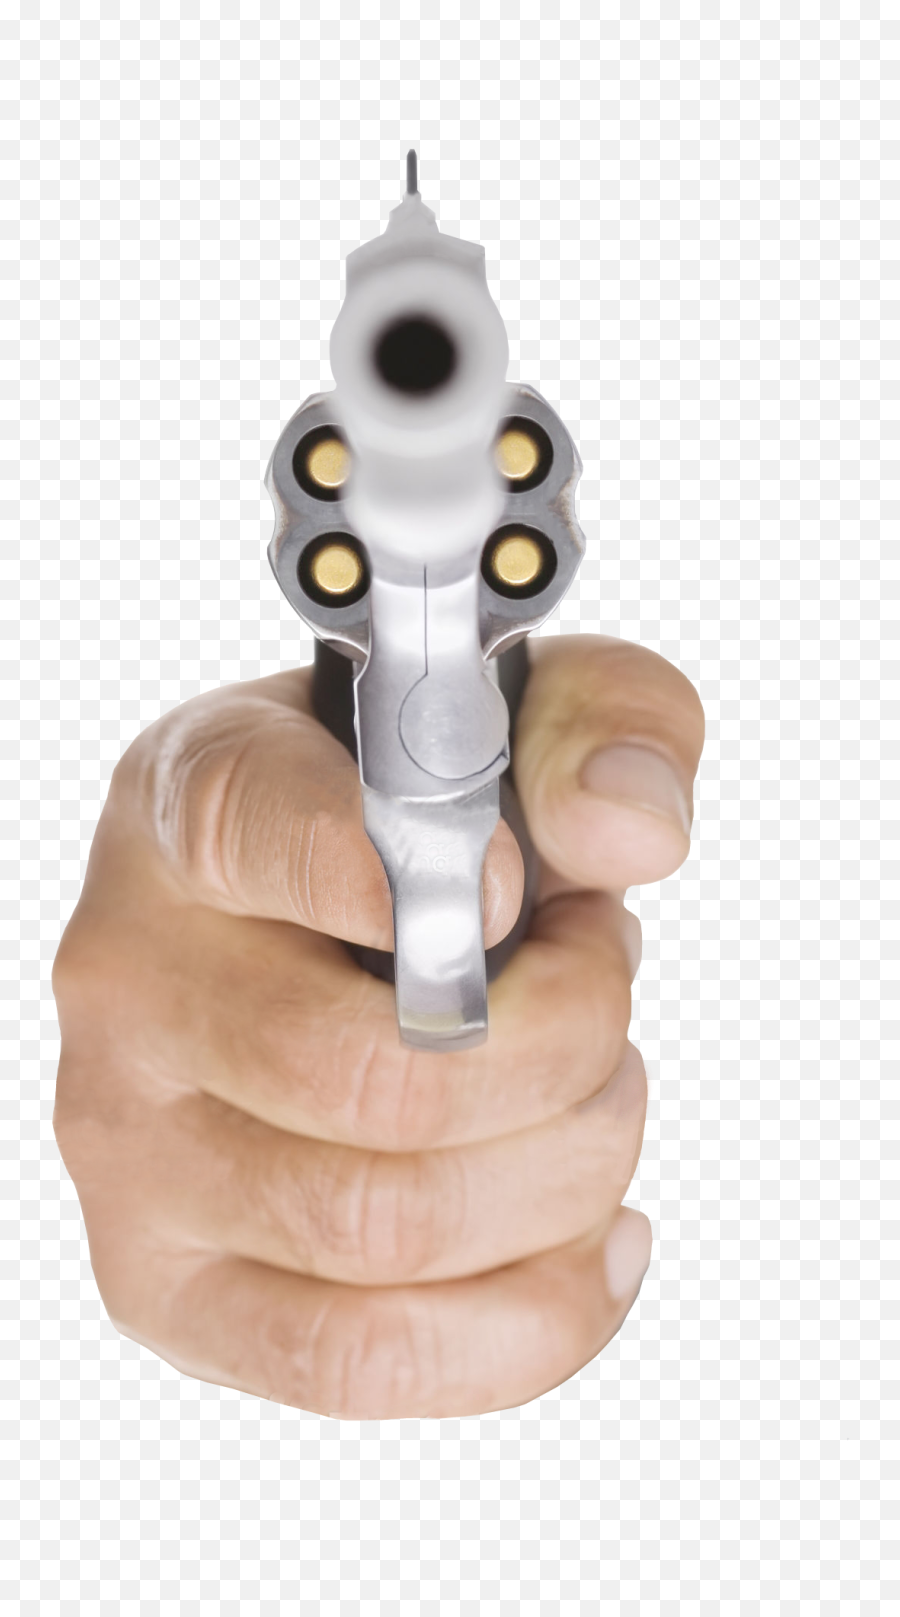 Pistol Gun Guns Bullet Weapon Face - Transparent Hand Holding Gun Png,Hand Holding Gun Transparent